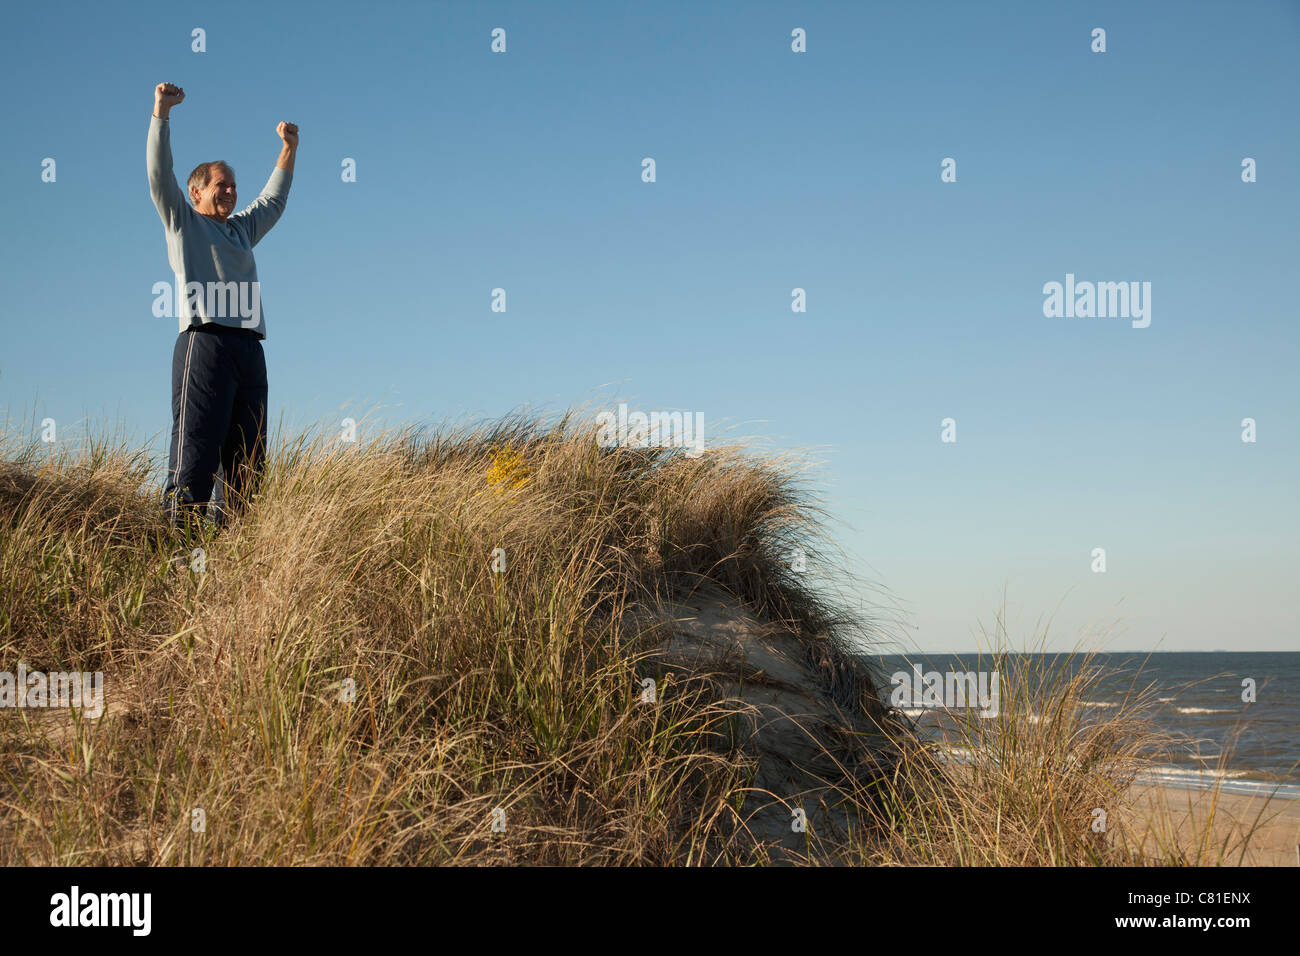 Man cheering on sand dune près de ocean Banque D'Images